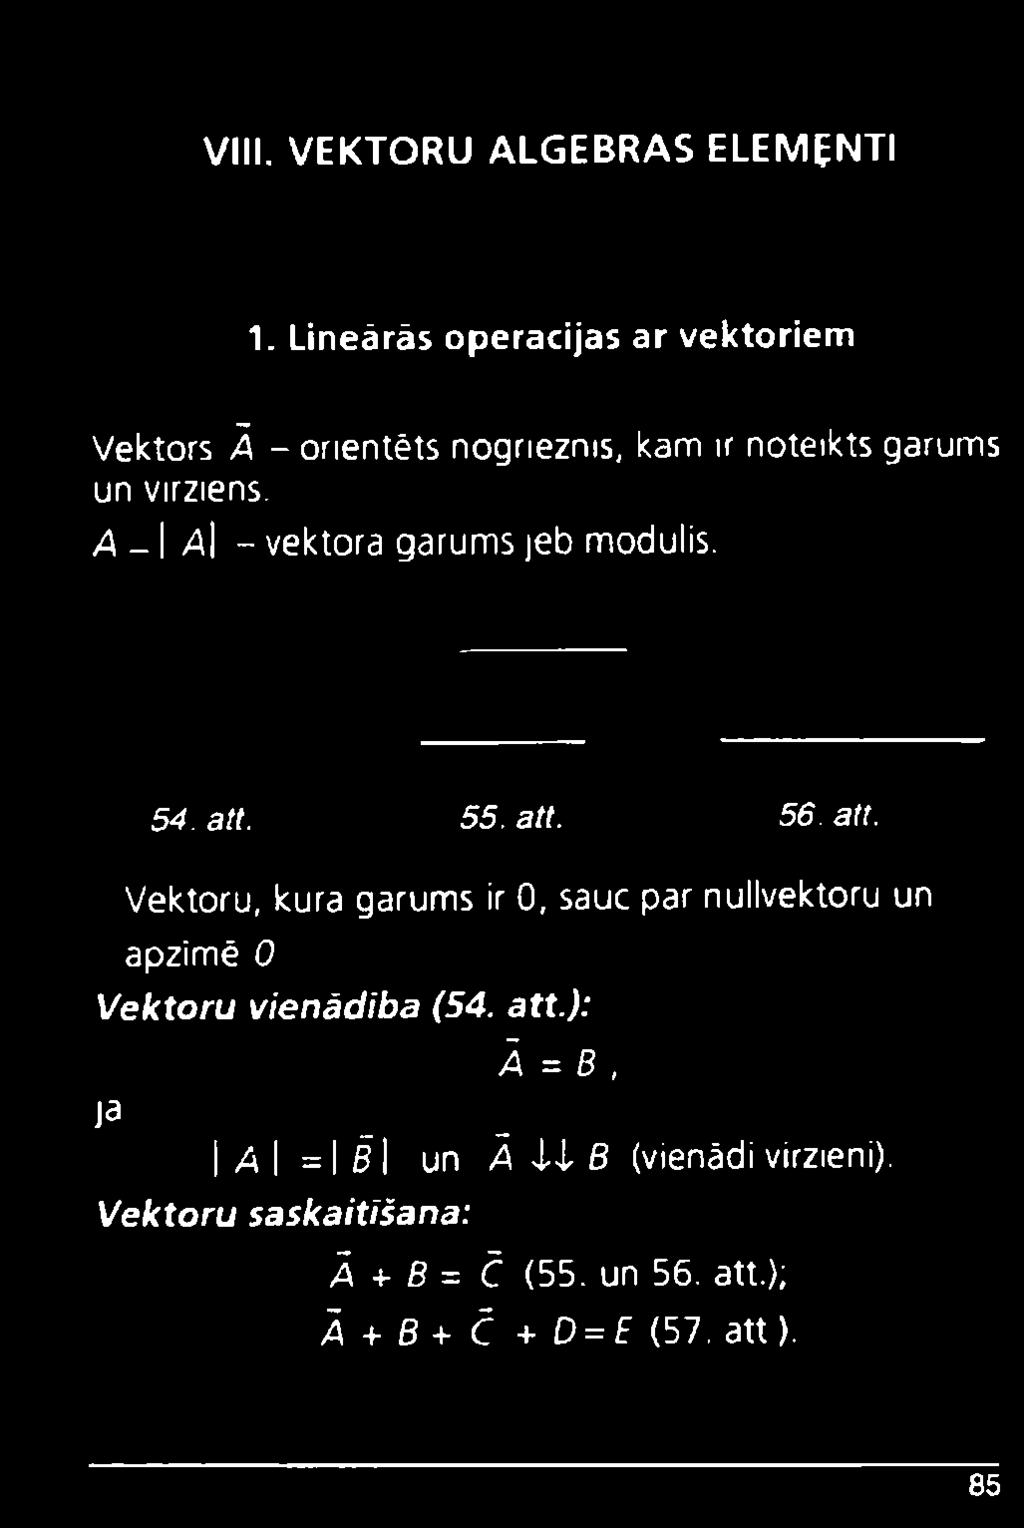 A - \ A\ - vektora garums jeb modulis. 54. att.